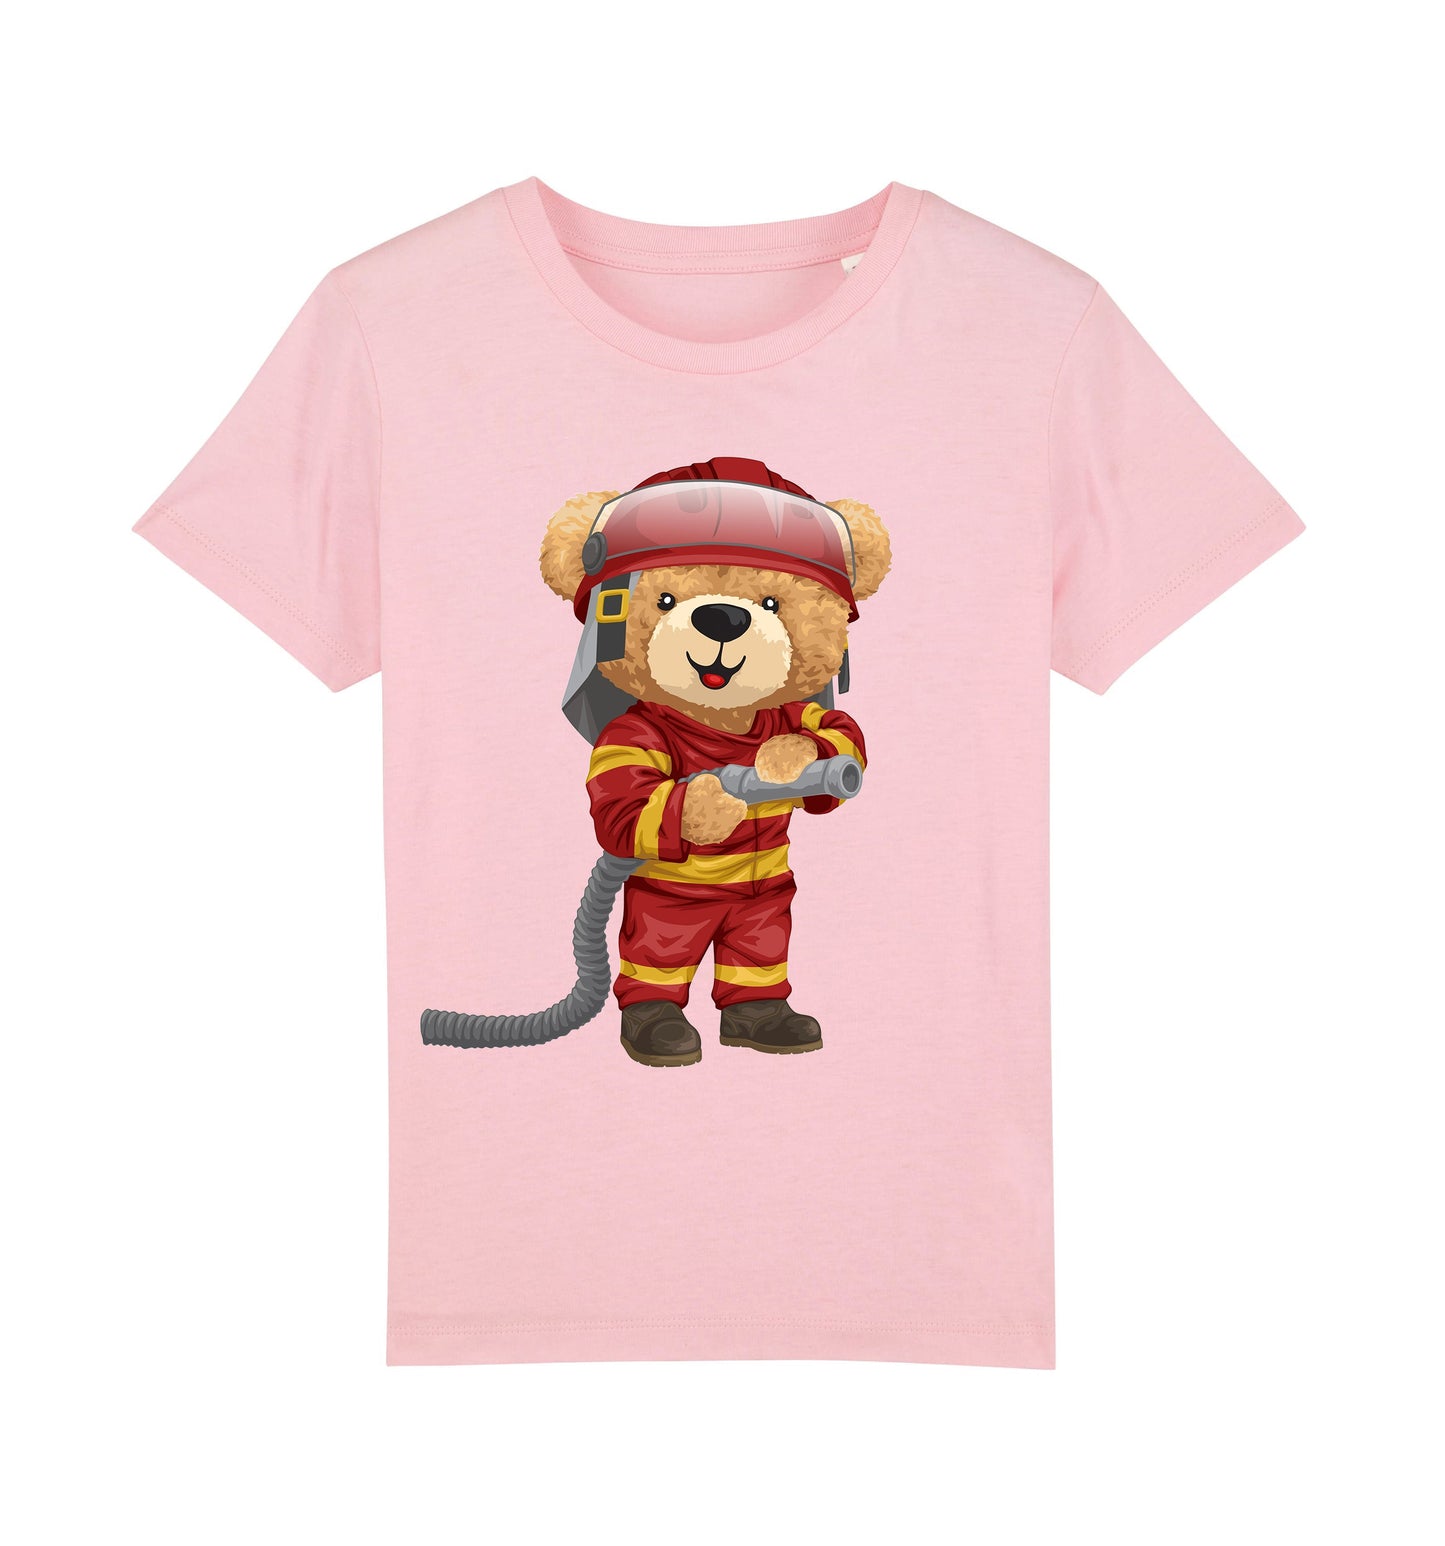 Eco-Friendly Firefighter Bear Kids T-shirt